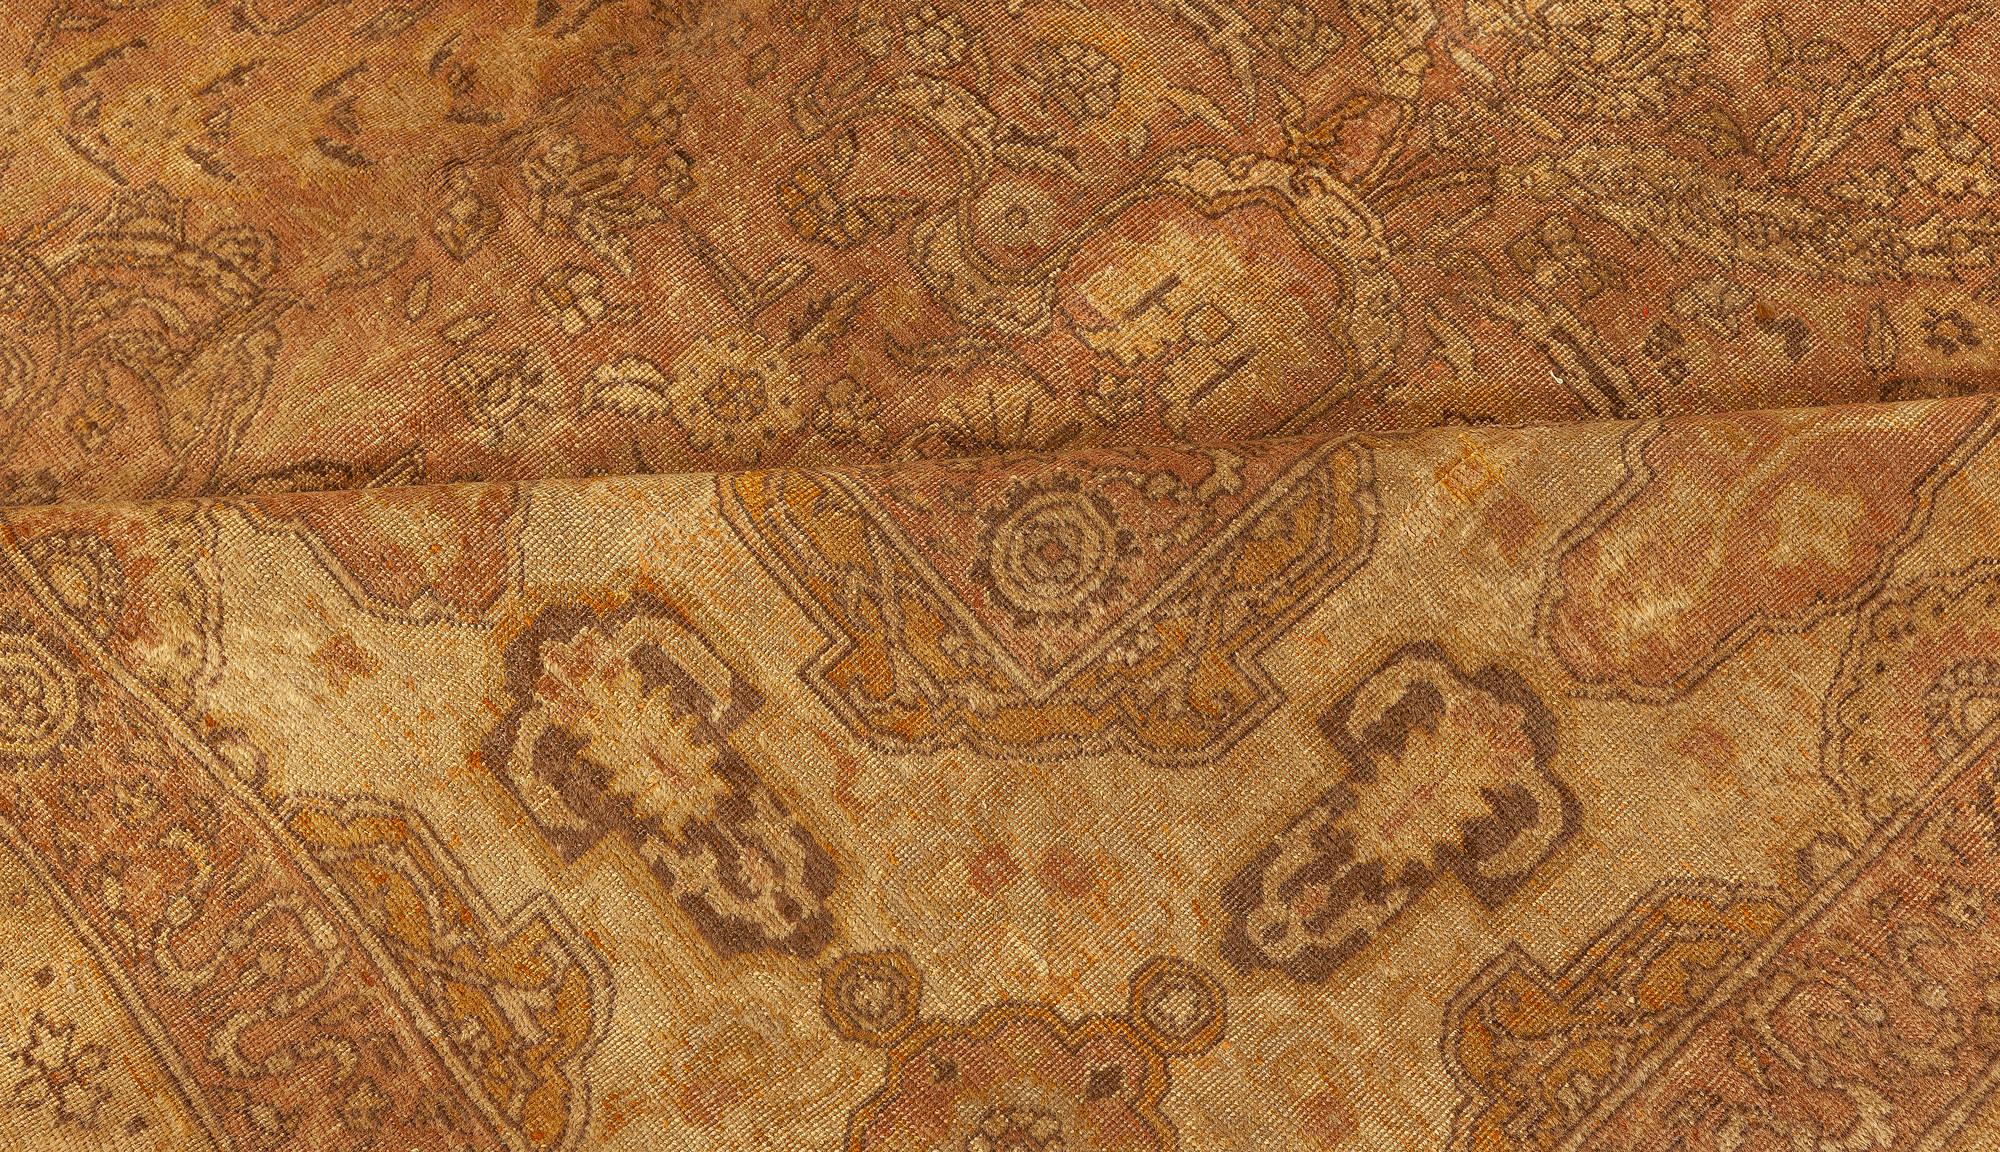 Large antique Turkish Sivas Botanic handmade wool carpet
Size: 14'0